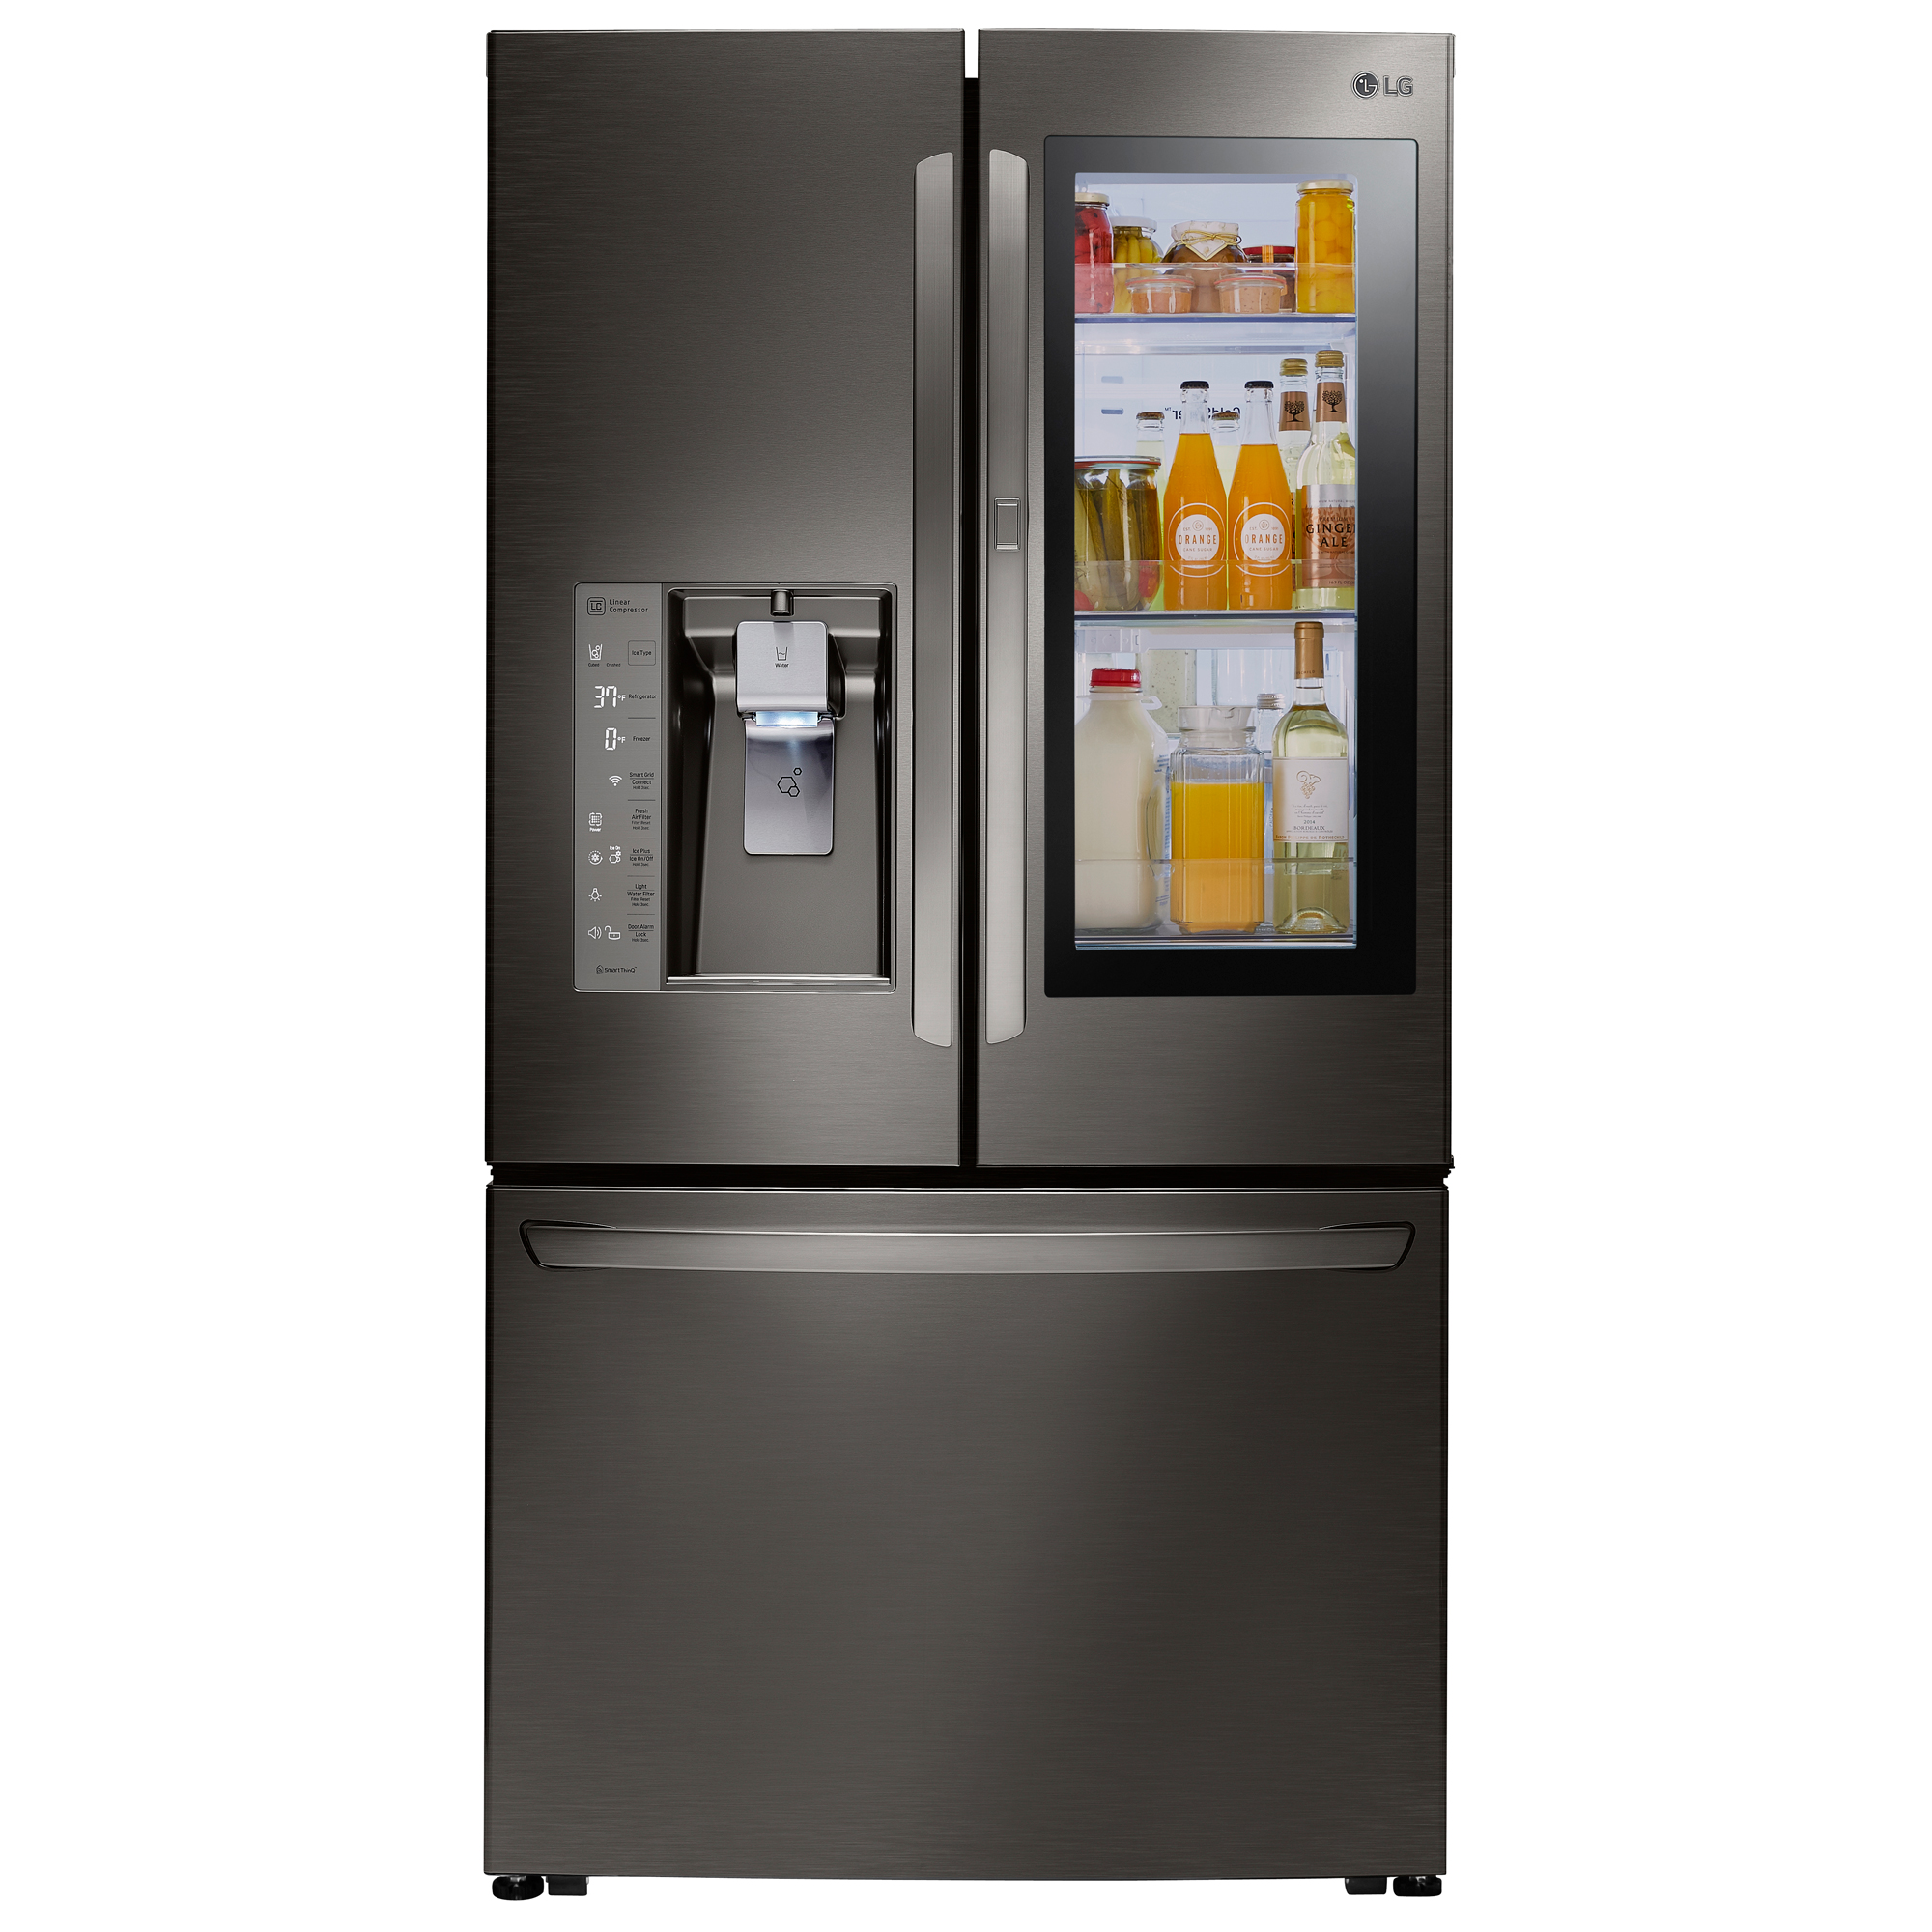 LG LFXC24796D Smart Door-In-Door Refrigerator w/InstaView- 24 cu. ft - Black